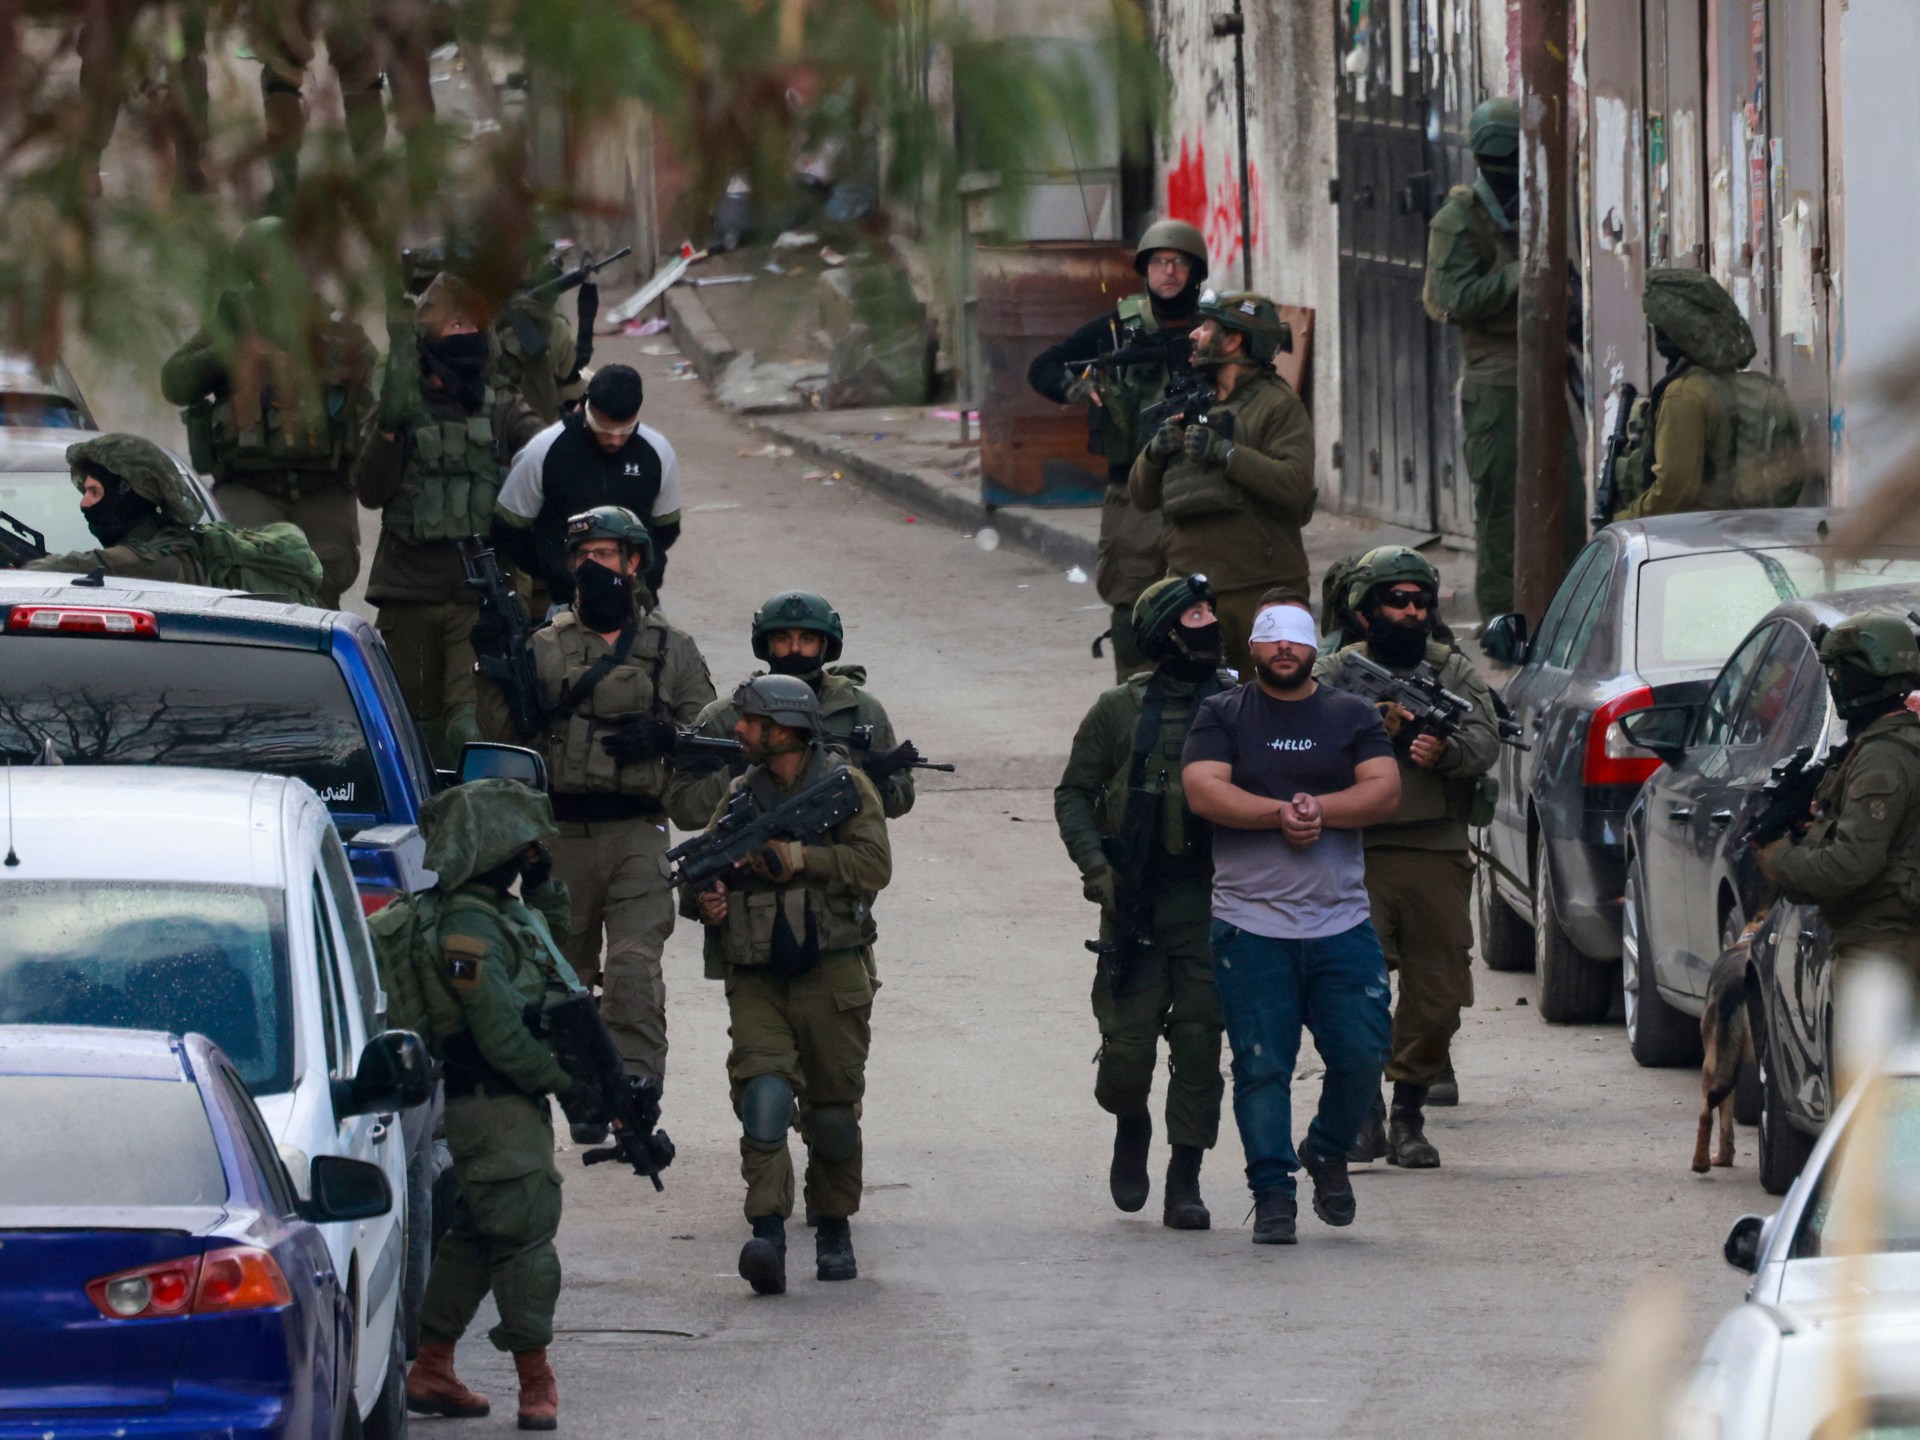 مداهمات واعتقالات بالضفة الغربية تطال أسيرة محررة | أخبار – البوكس نيوز